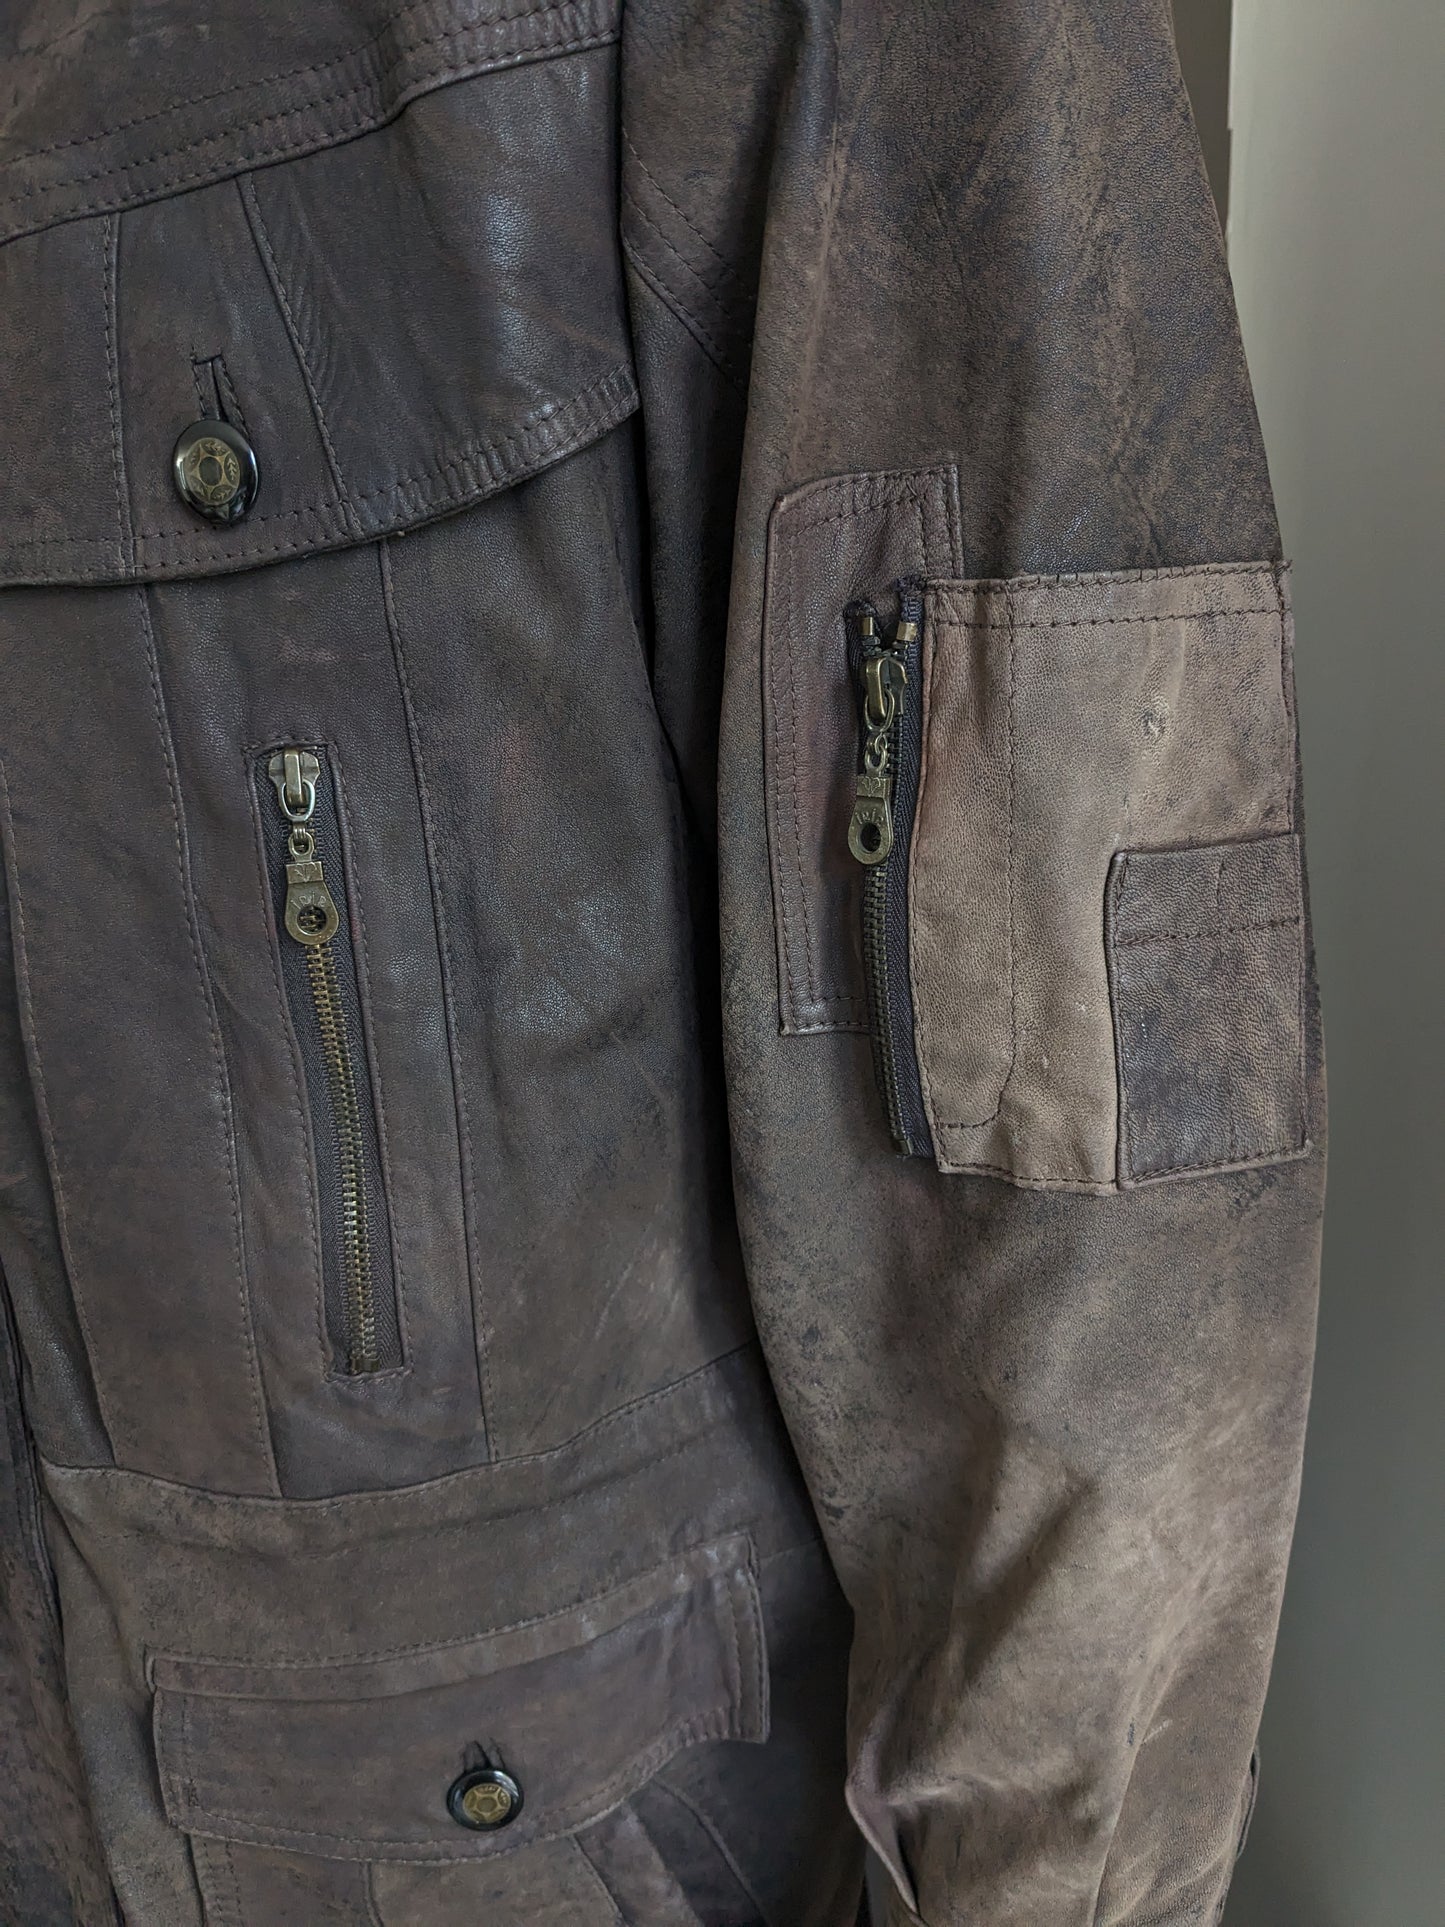 Vintage halflange Leren jas / jack met vele zakken. Donker Bruin gekleurd. Maat L / XL.